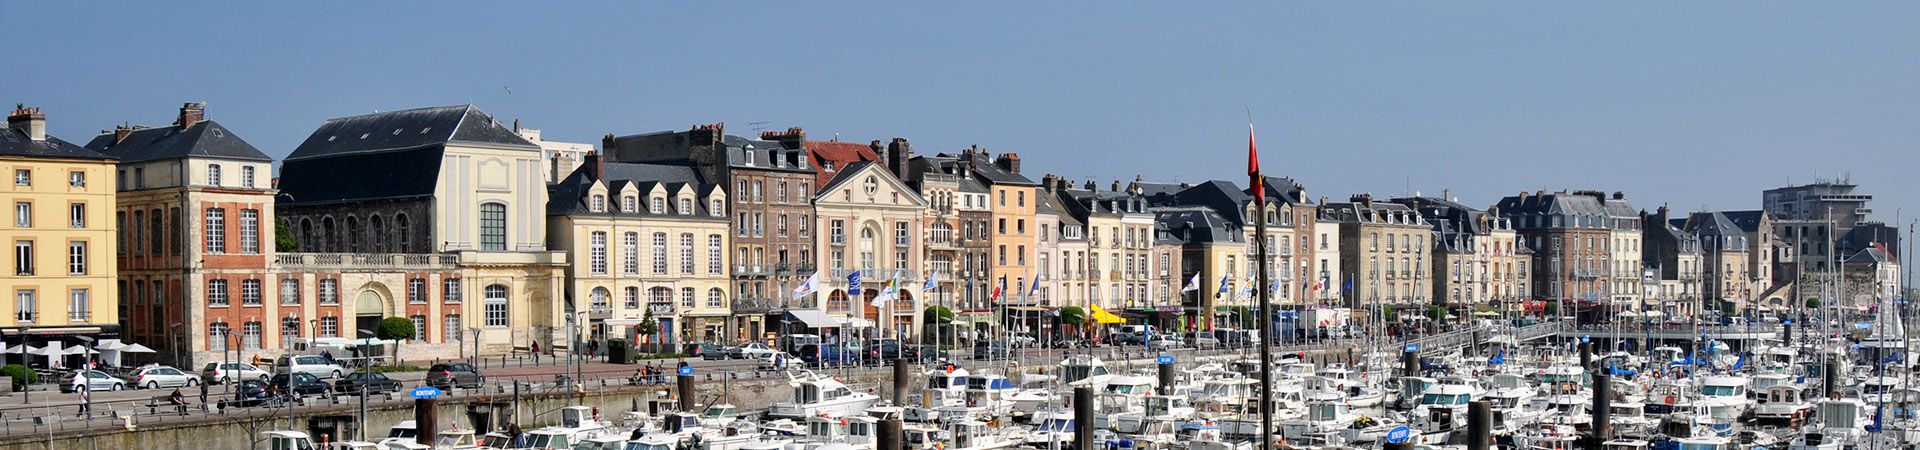 Dieppe's harbour